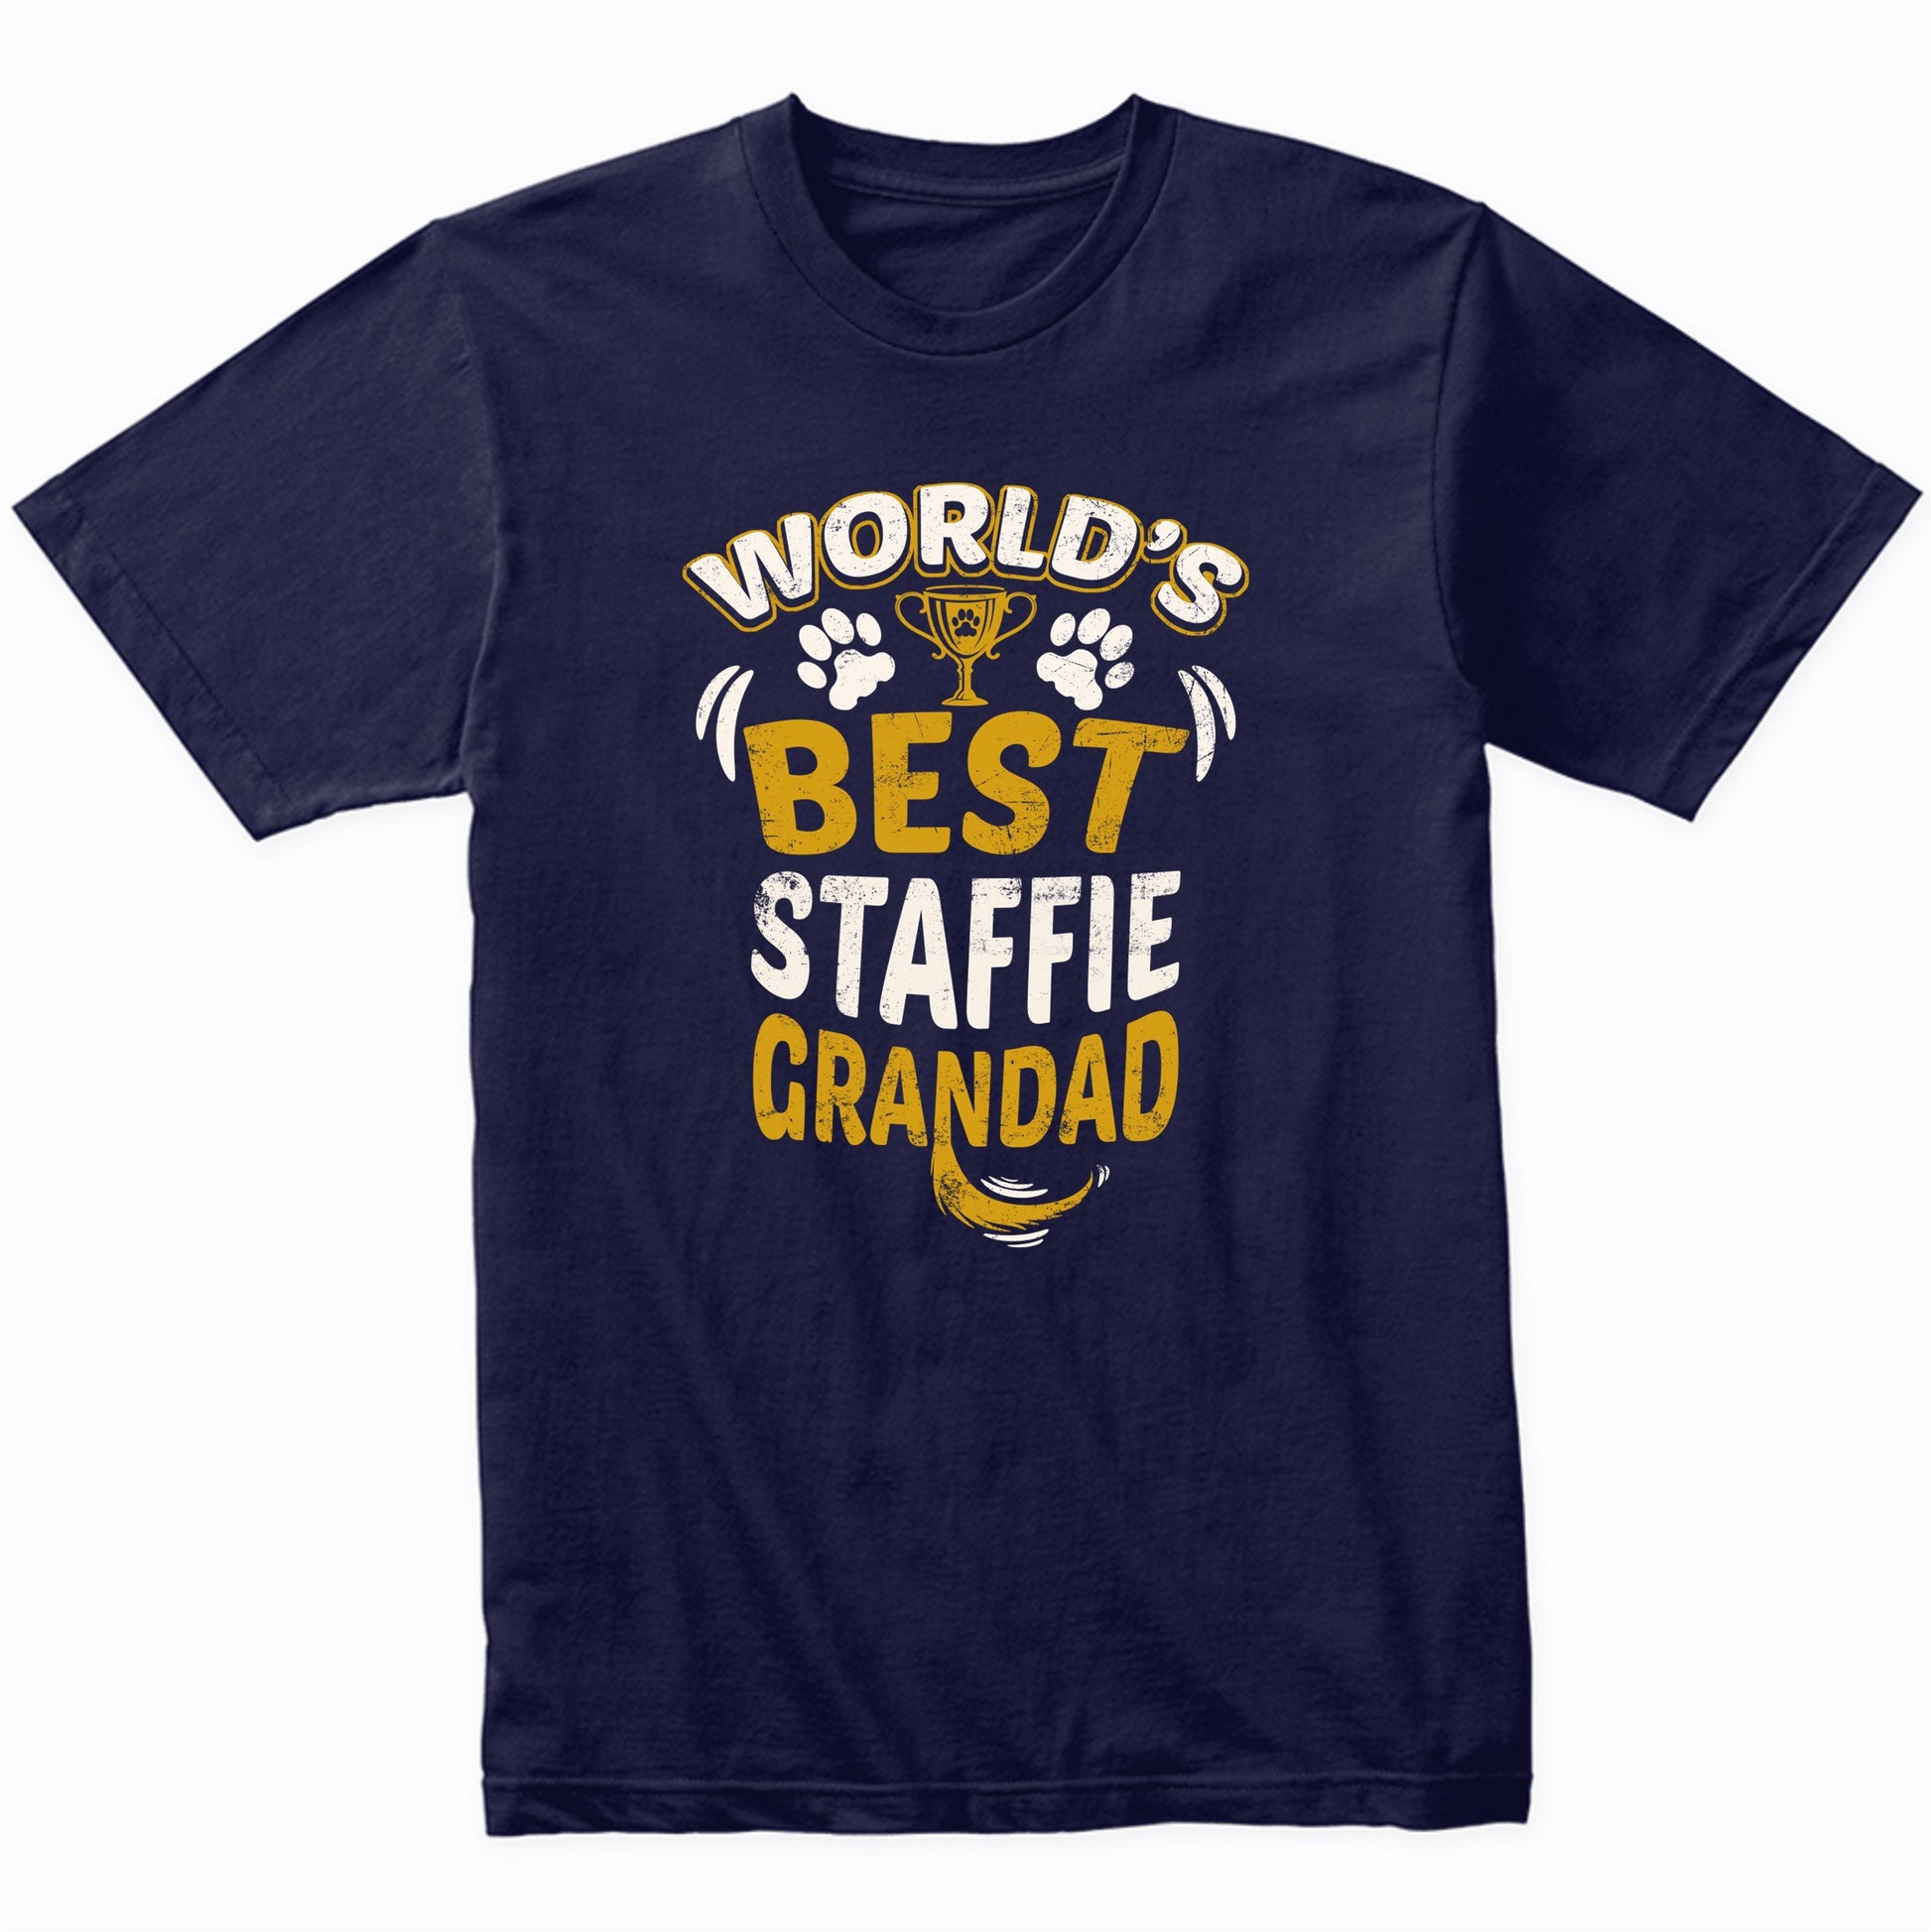 World's Best Staffie Grandad Graphic T-Shirt